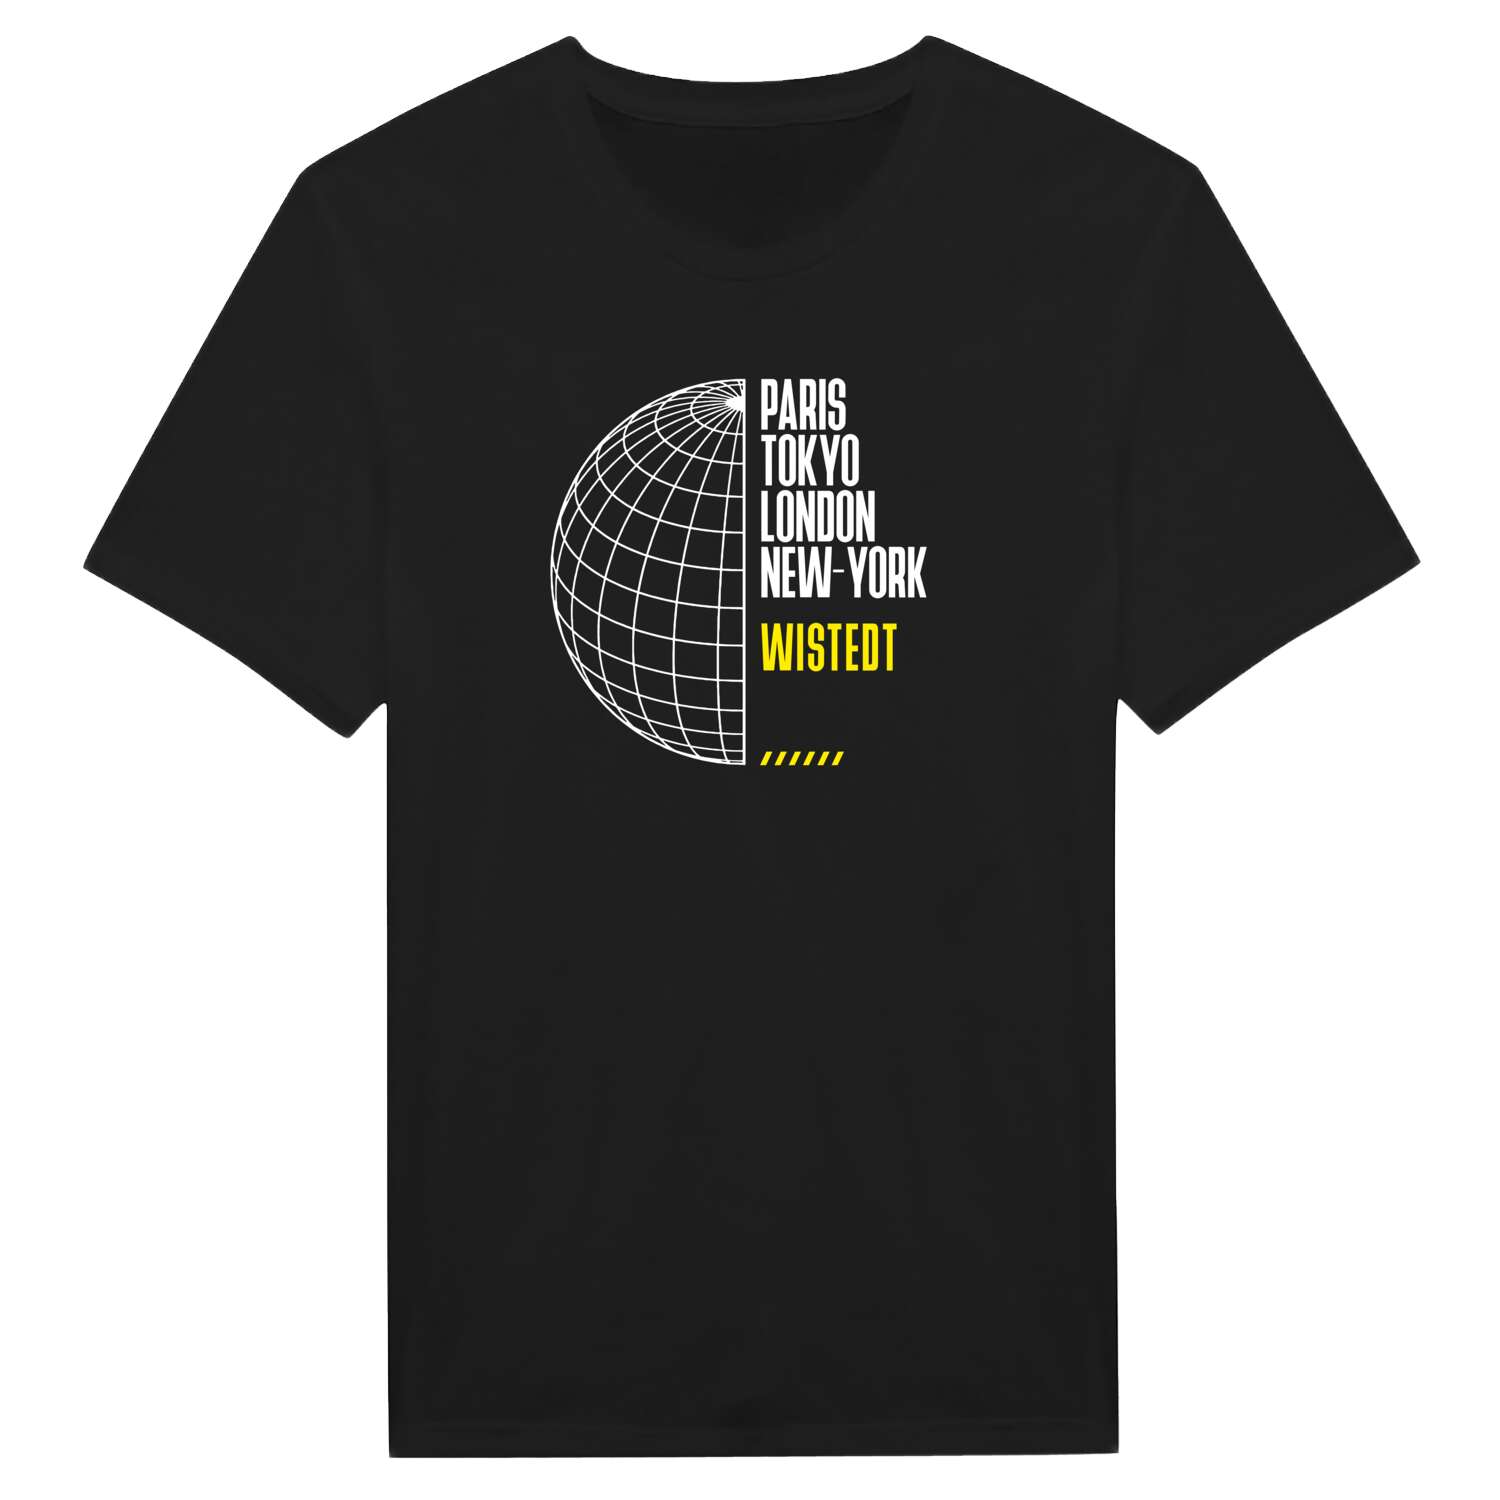 Wistedt T-Shirt »Paris Tokyo London«